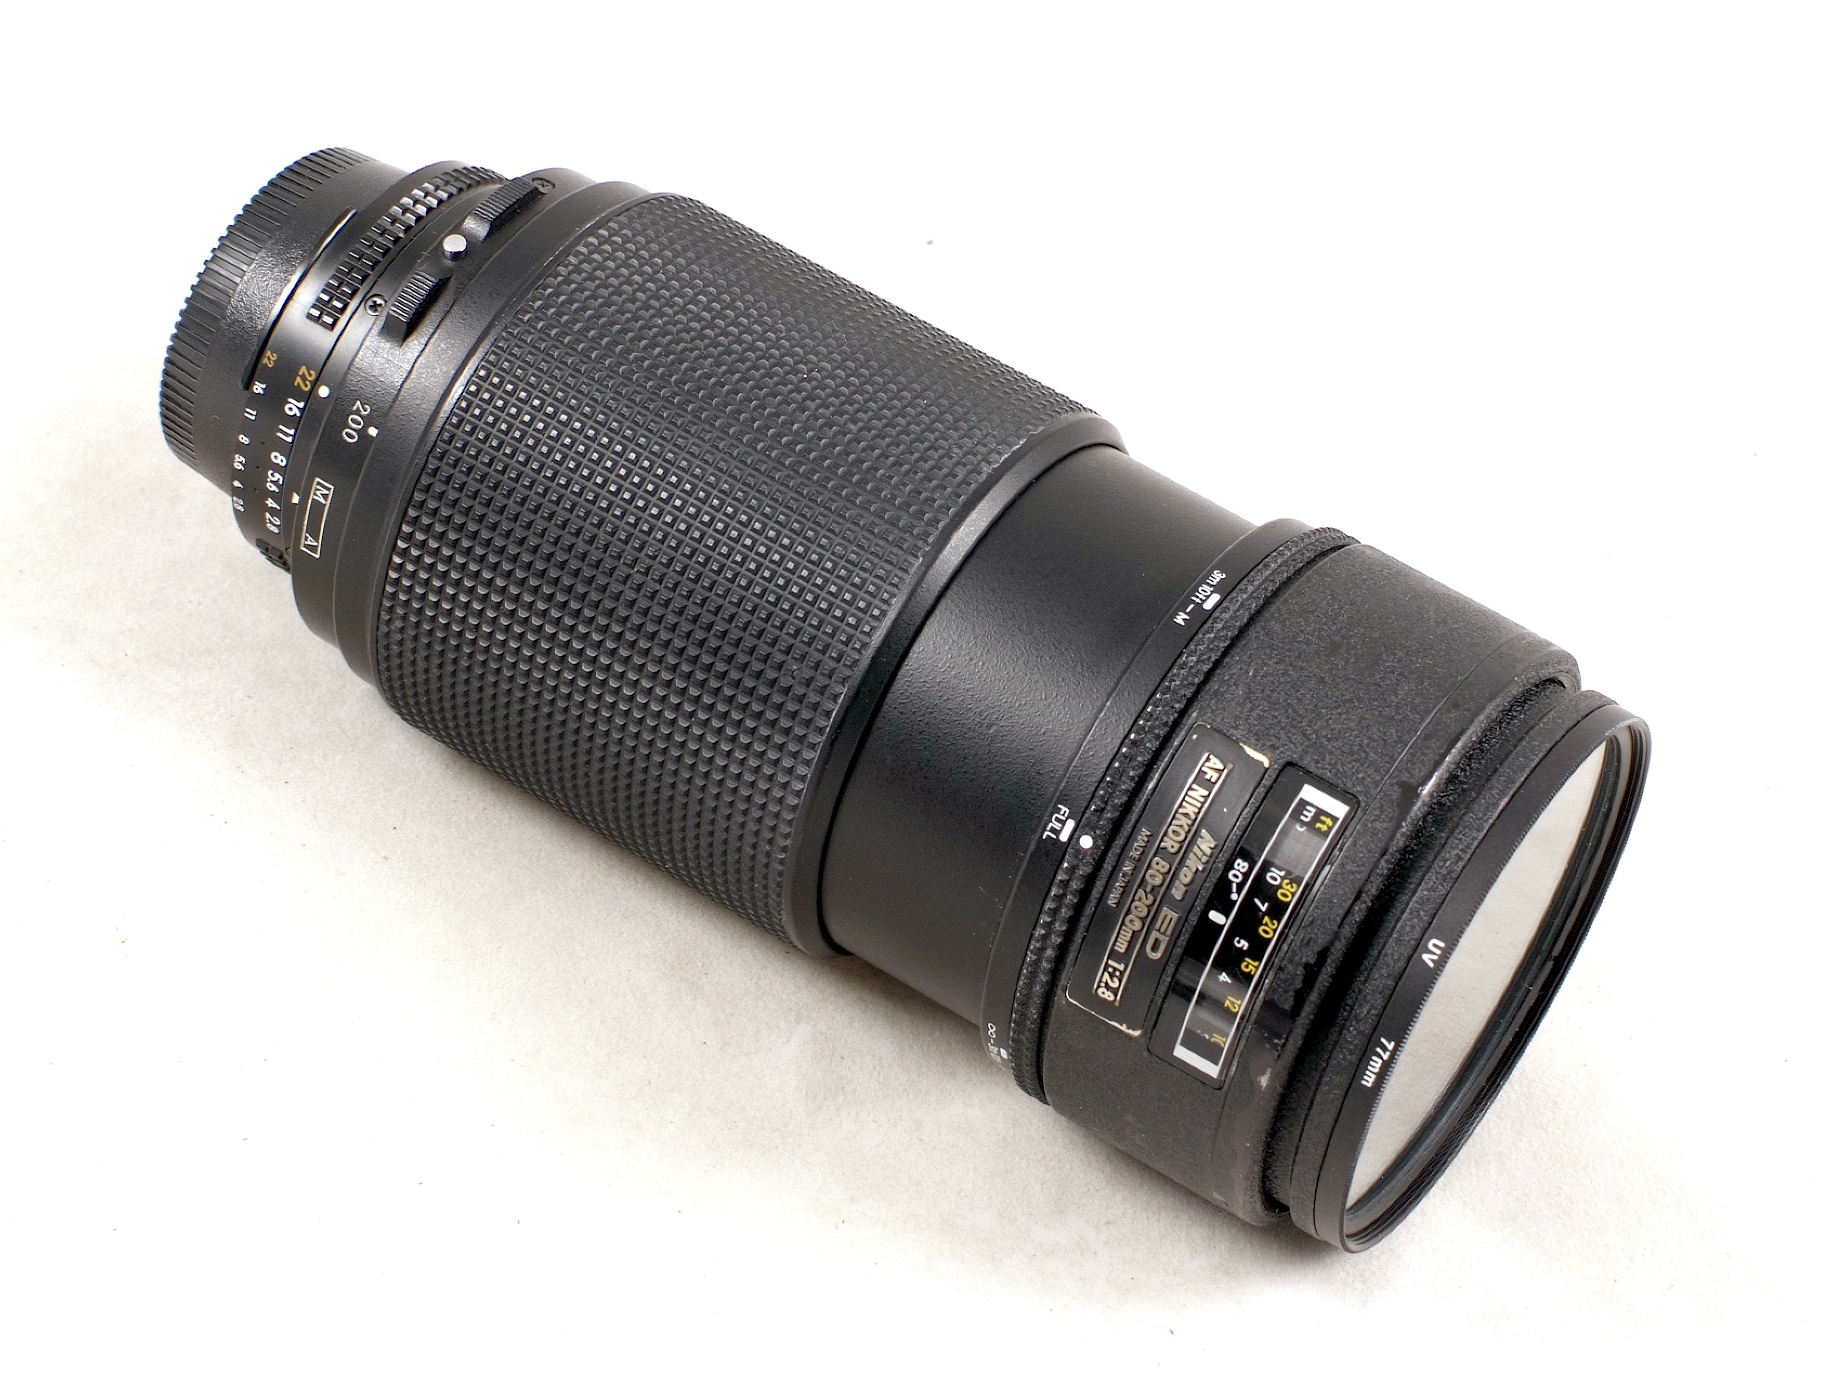 AF Nikkor 80-200mm f2.8 ED AF Zoom Lens - Image 2 of 2